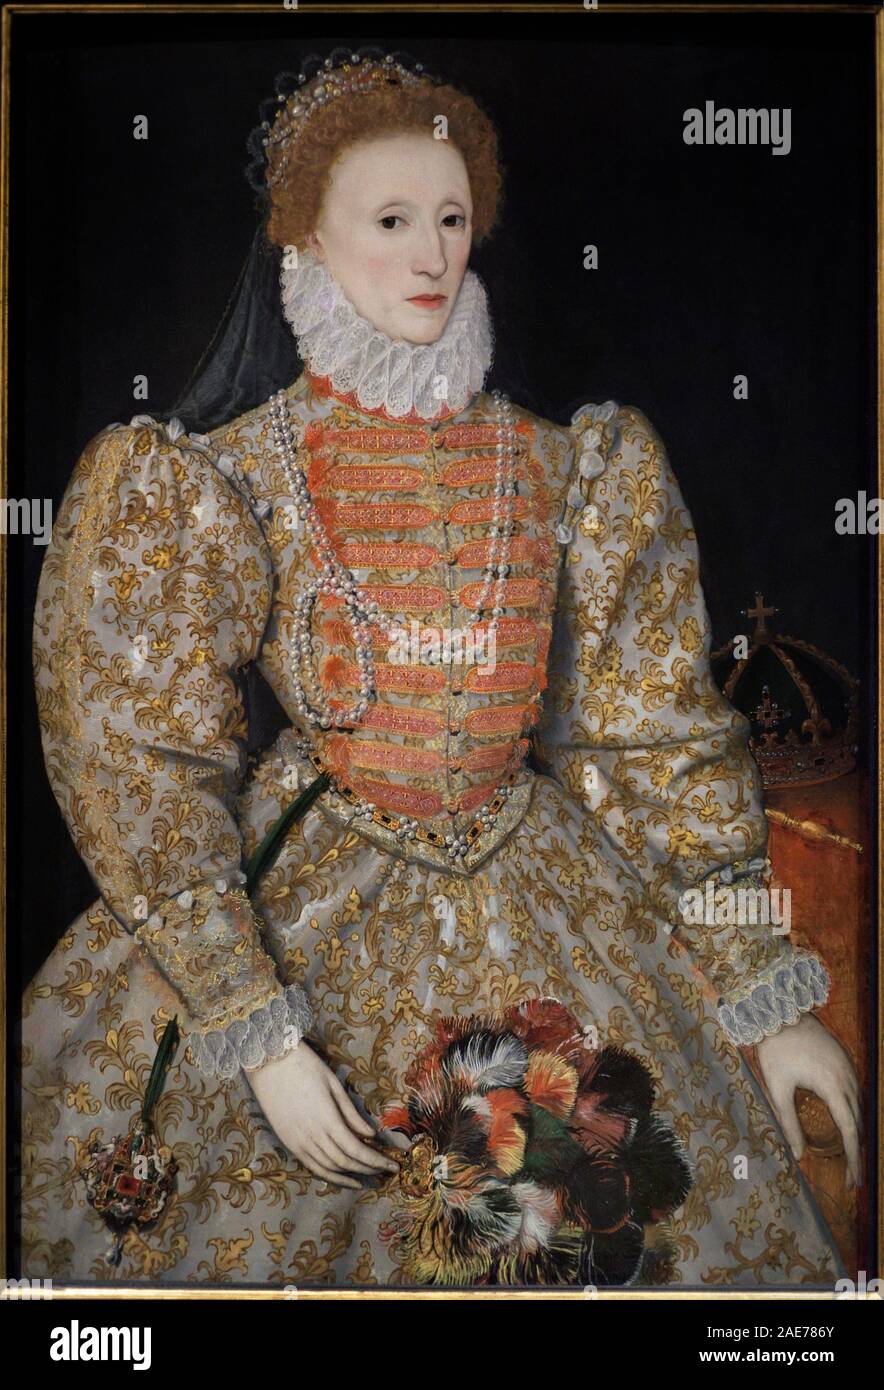 Isabel I de Inglaterra (Elizabeth I), la Reina Virgen (1533-1603). Reina de Inglaterra e Irlanda entre 1558 y 1603. Pintura conocida como 'Retrato de Darnley', 1575-1576. Oleo sobre tabla. Patrón para los futuros retratos de la monarca. Autor desconocido, posiblemente continental (neerlandés). National Portrait Gallery, Londres, Inglaterra. Stock Photo